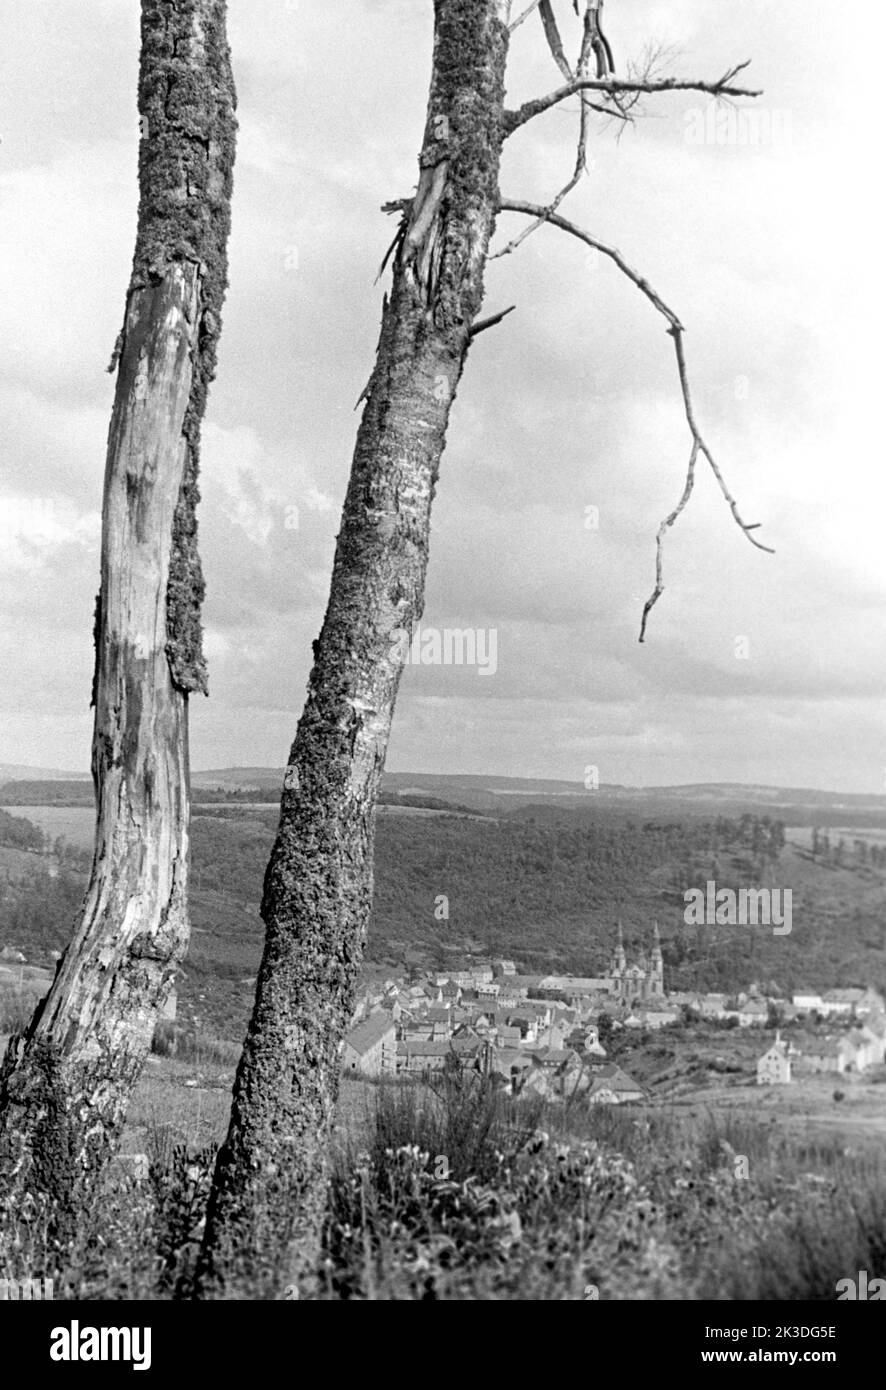 Blick auf Prüm in der Eifel mit alten Birken, circa 1952. View of Prüm with old birch trees, Eifel region, around 1952. Stock Photo